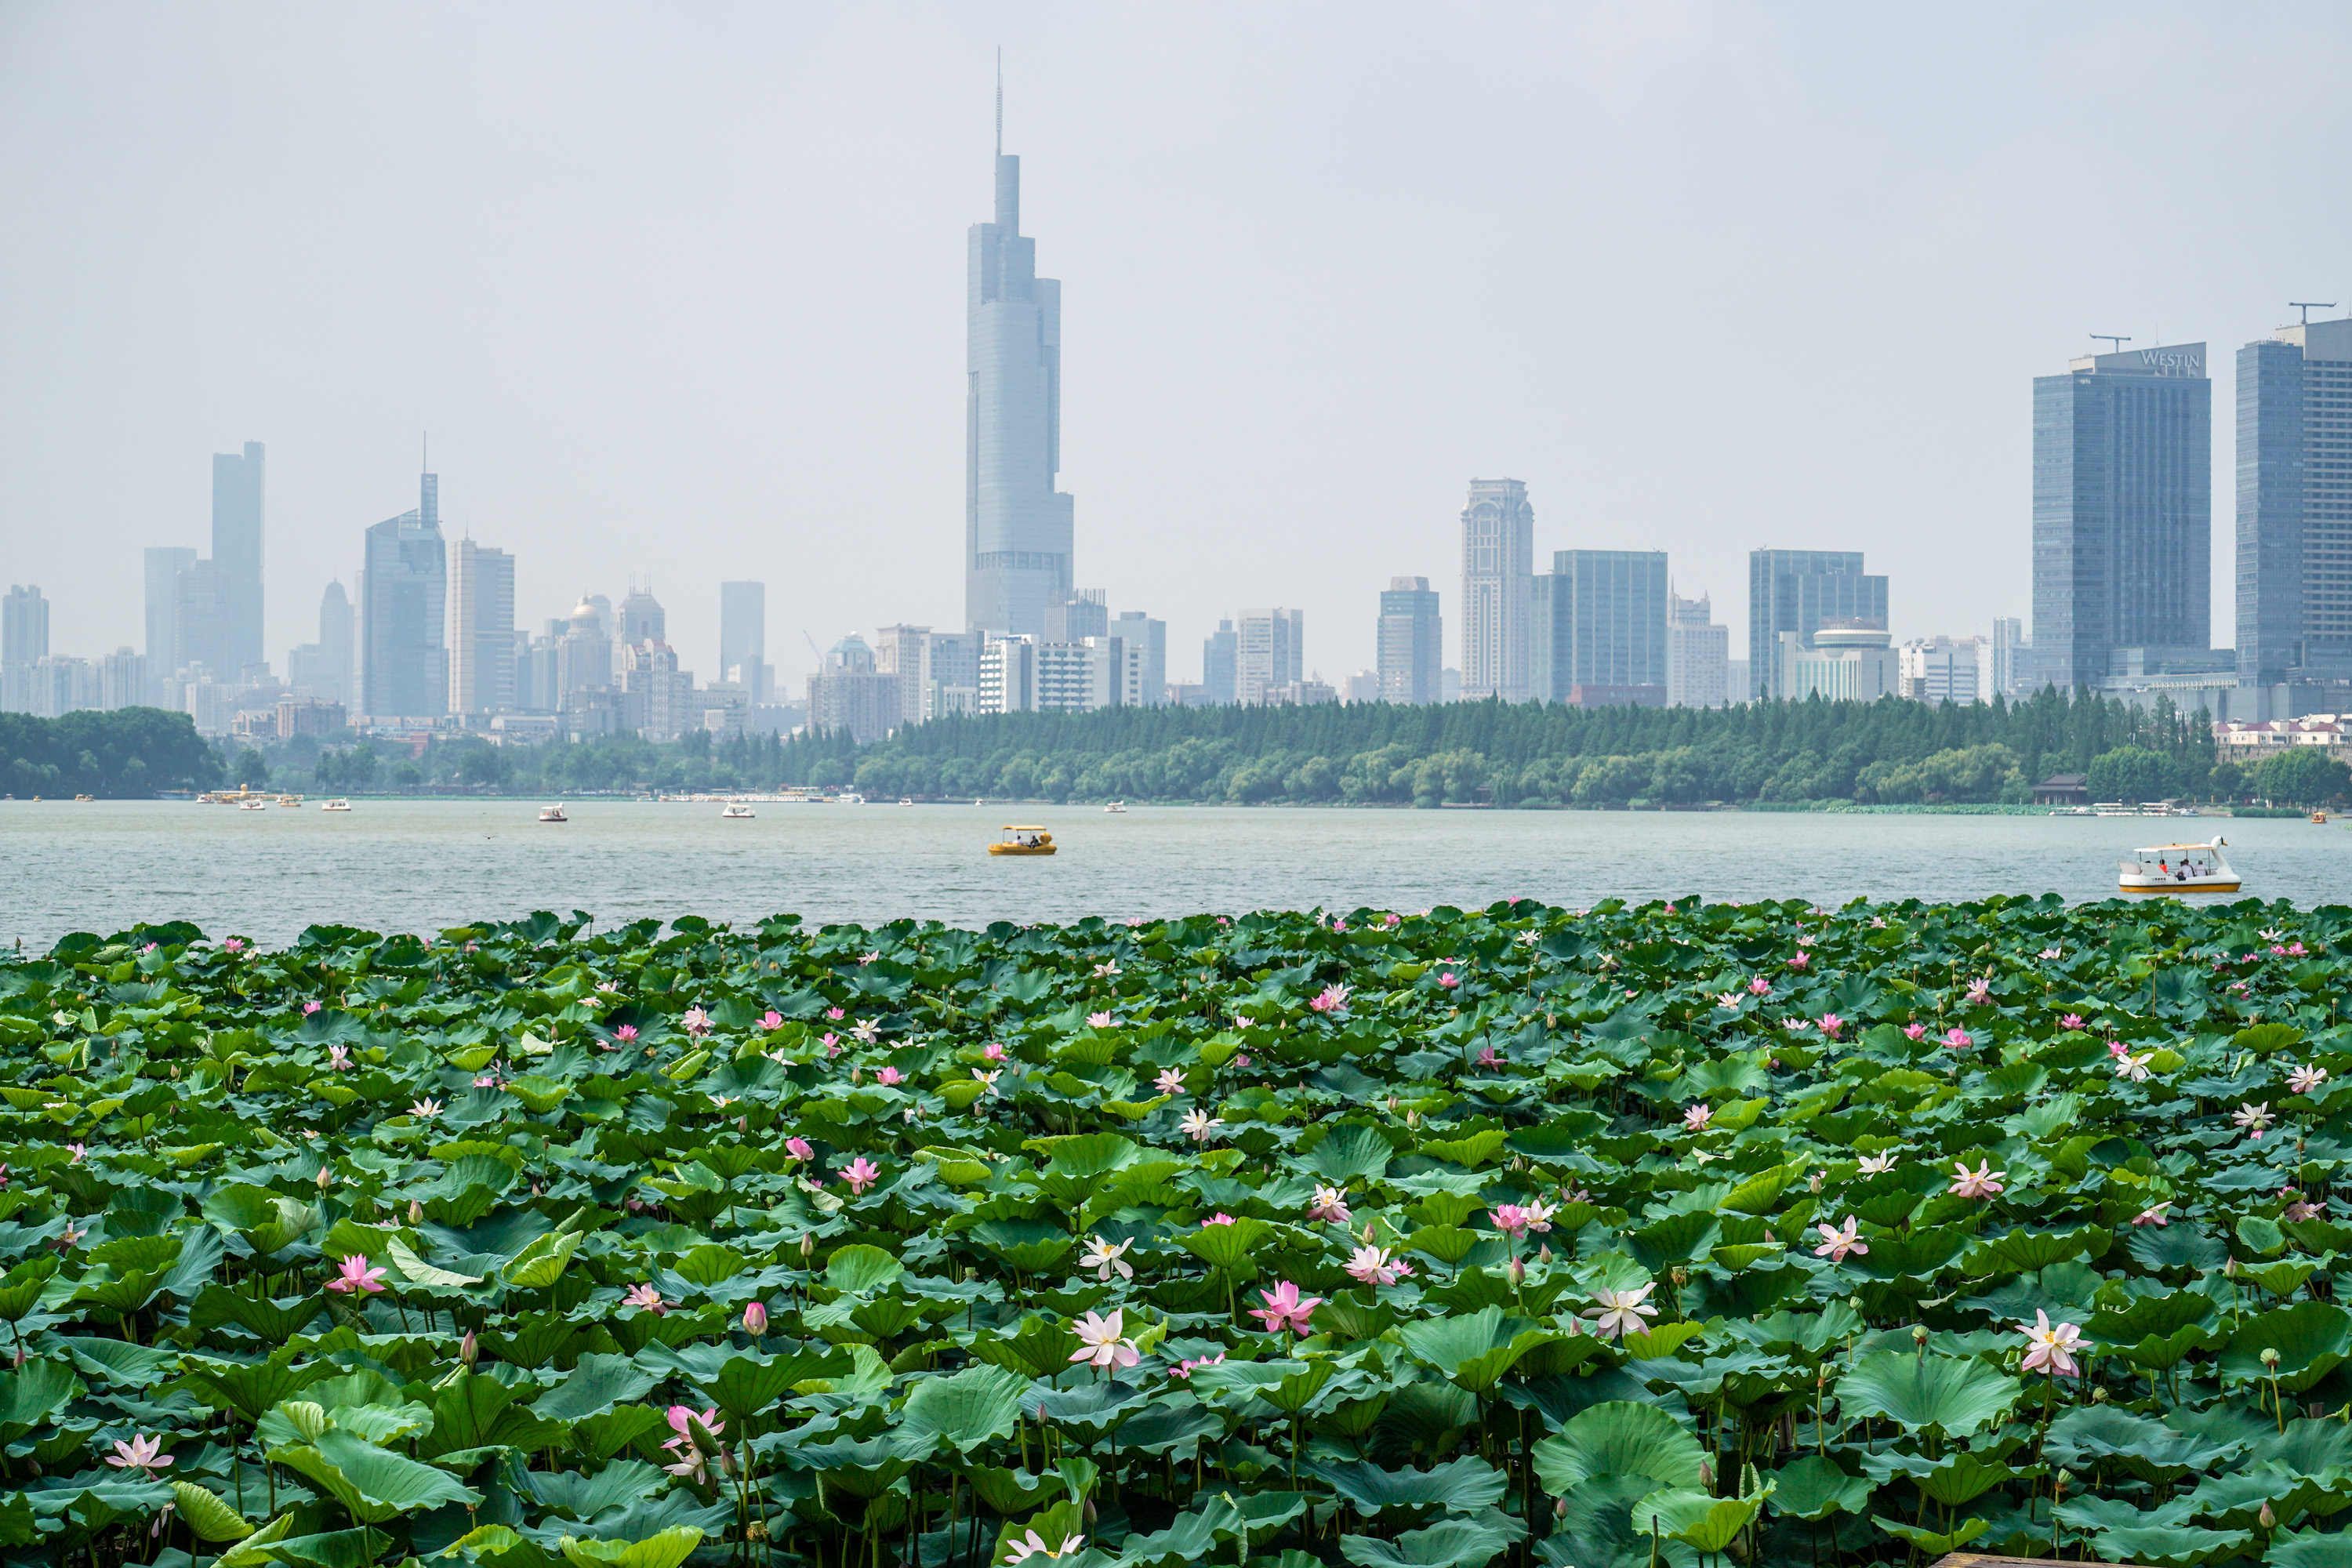 7月23日,市民和游客在南京玄武湖公园泛舟赏荷